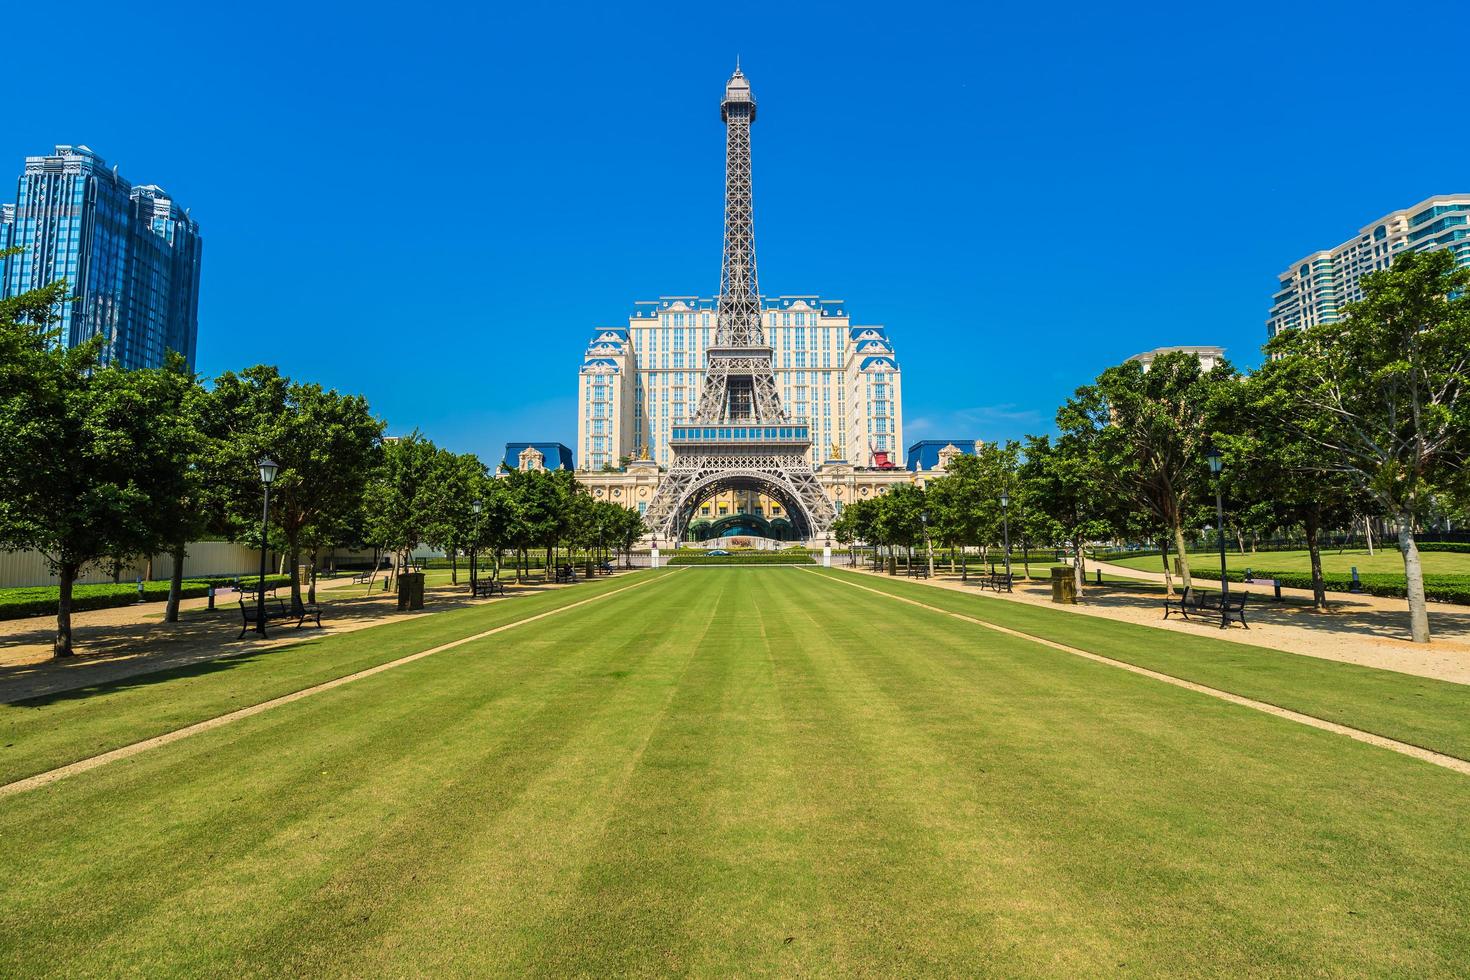 Tour Eiffel monument de l'hôtel et resort parisien dans la ville de Macao, Chine photo